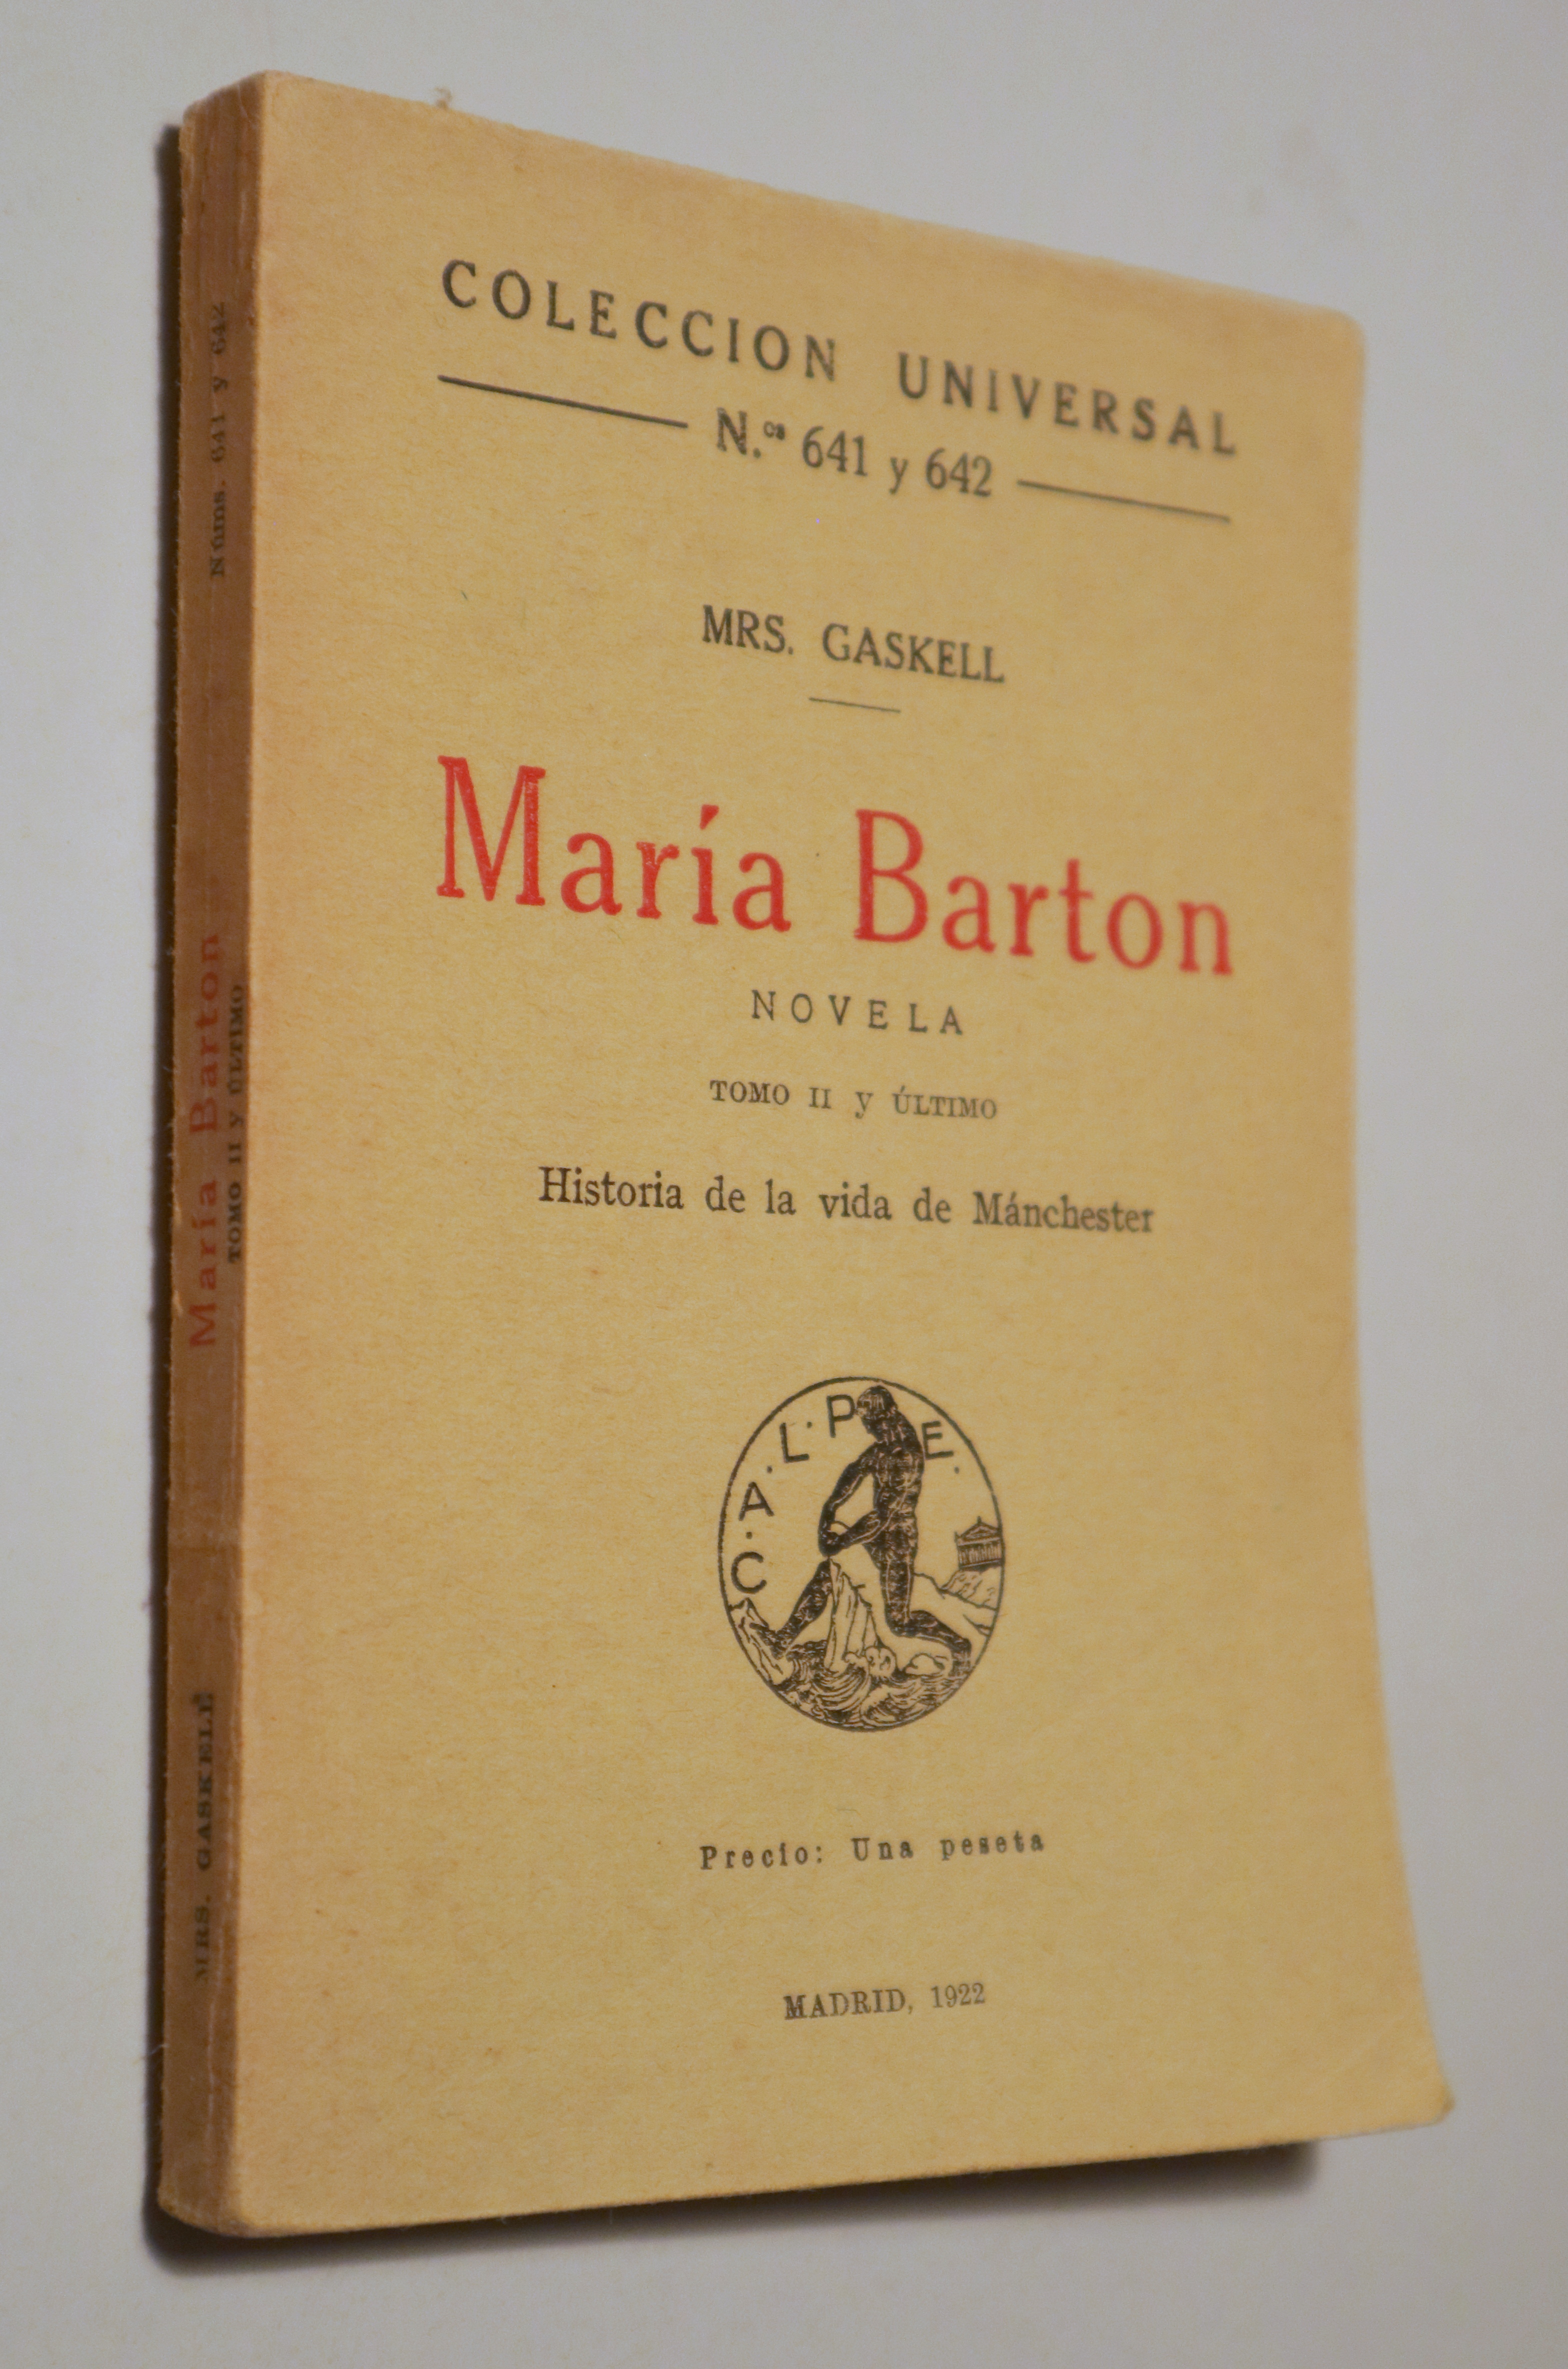 MARÍA BARTON. Novela (tomo II y último). Historia de la vida de Mánchester - Madrid 1922